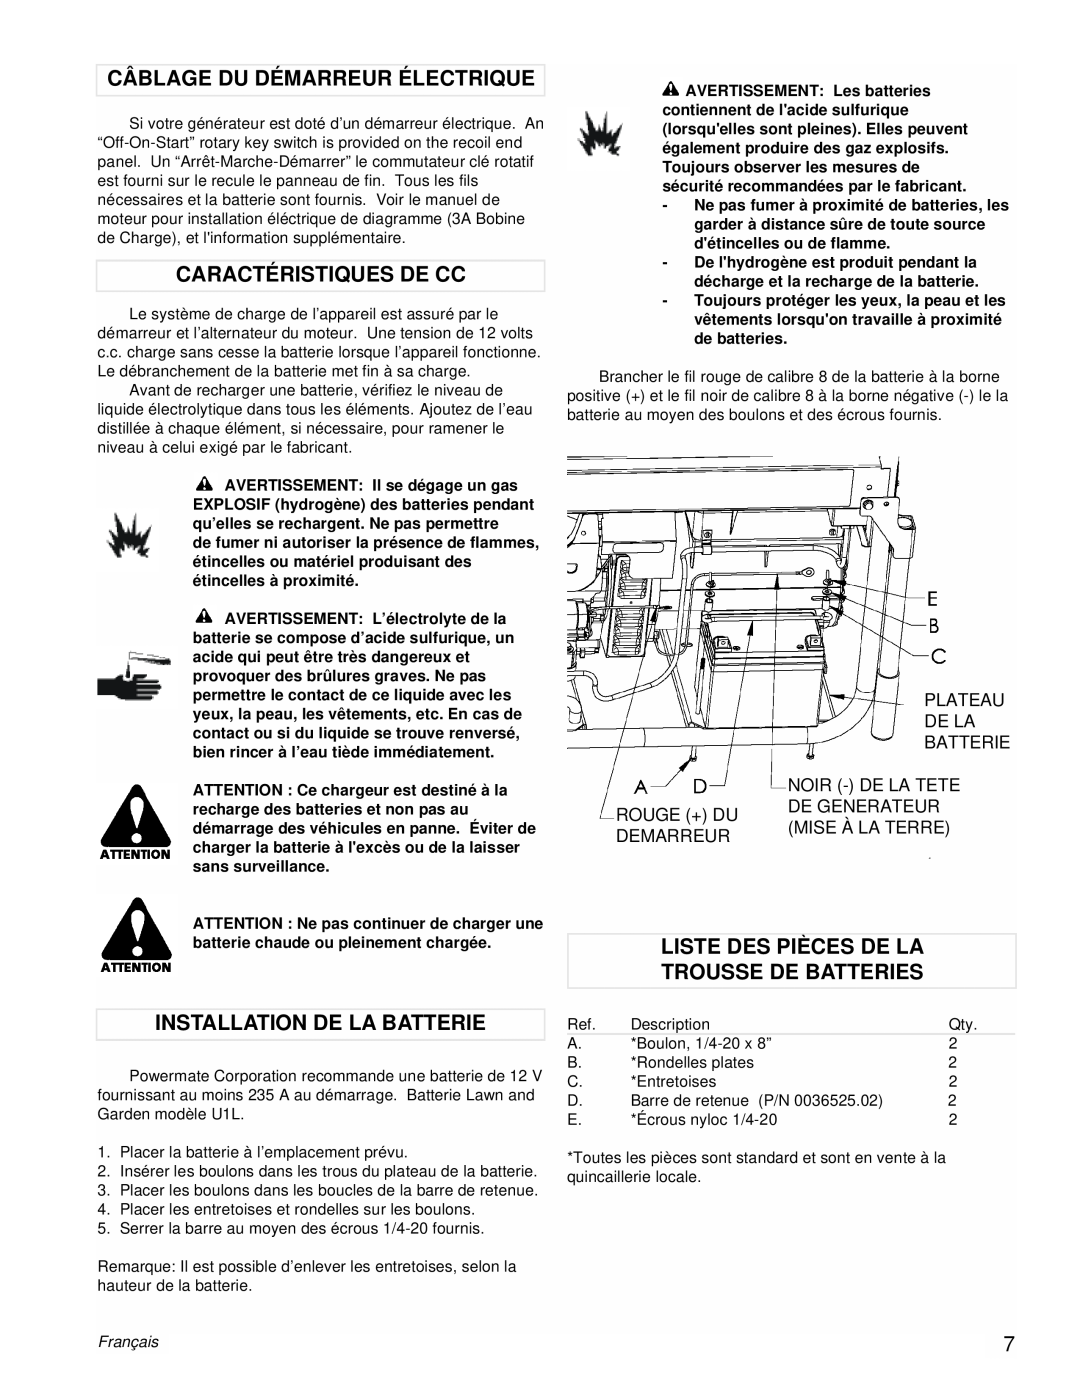 Powermate PMC601200 manual Câblage Du Démarreur Électrique, Caractéristiques De Cc, Installation De La Batterie, Français 